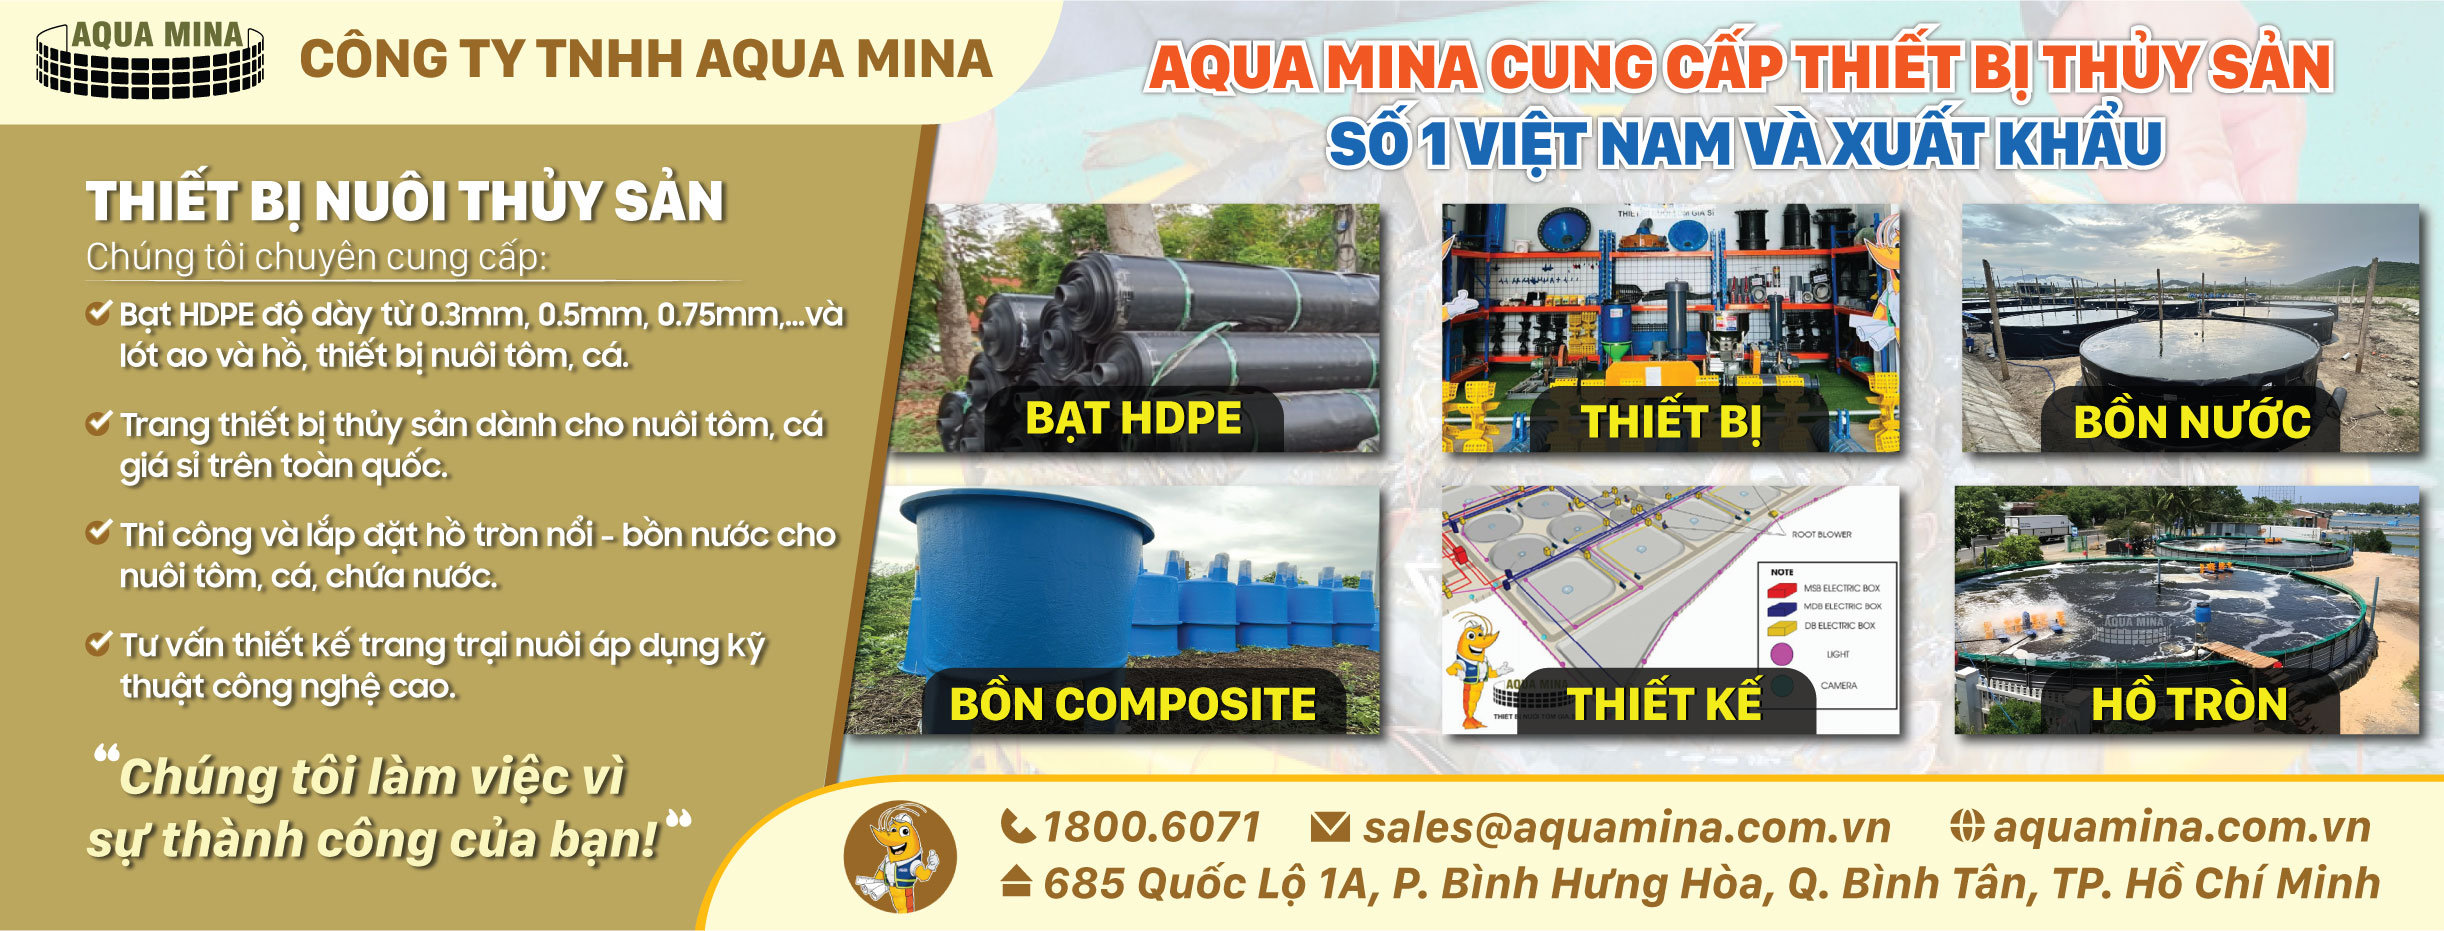 Aqua Mina - Đơn vị cung cấp trang thiết bị thủy sản số 1 việt nam và xuất khẩu